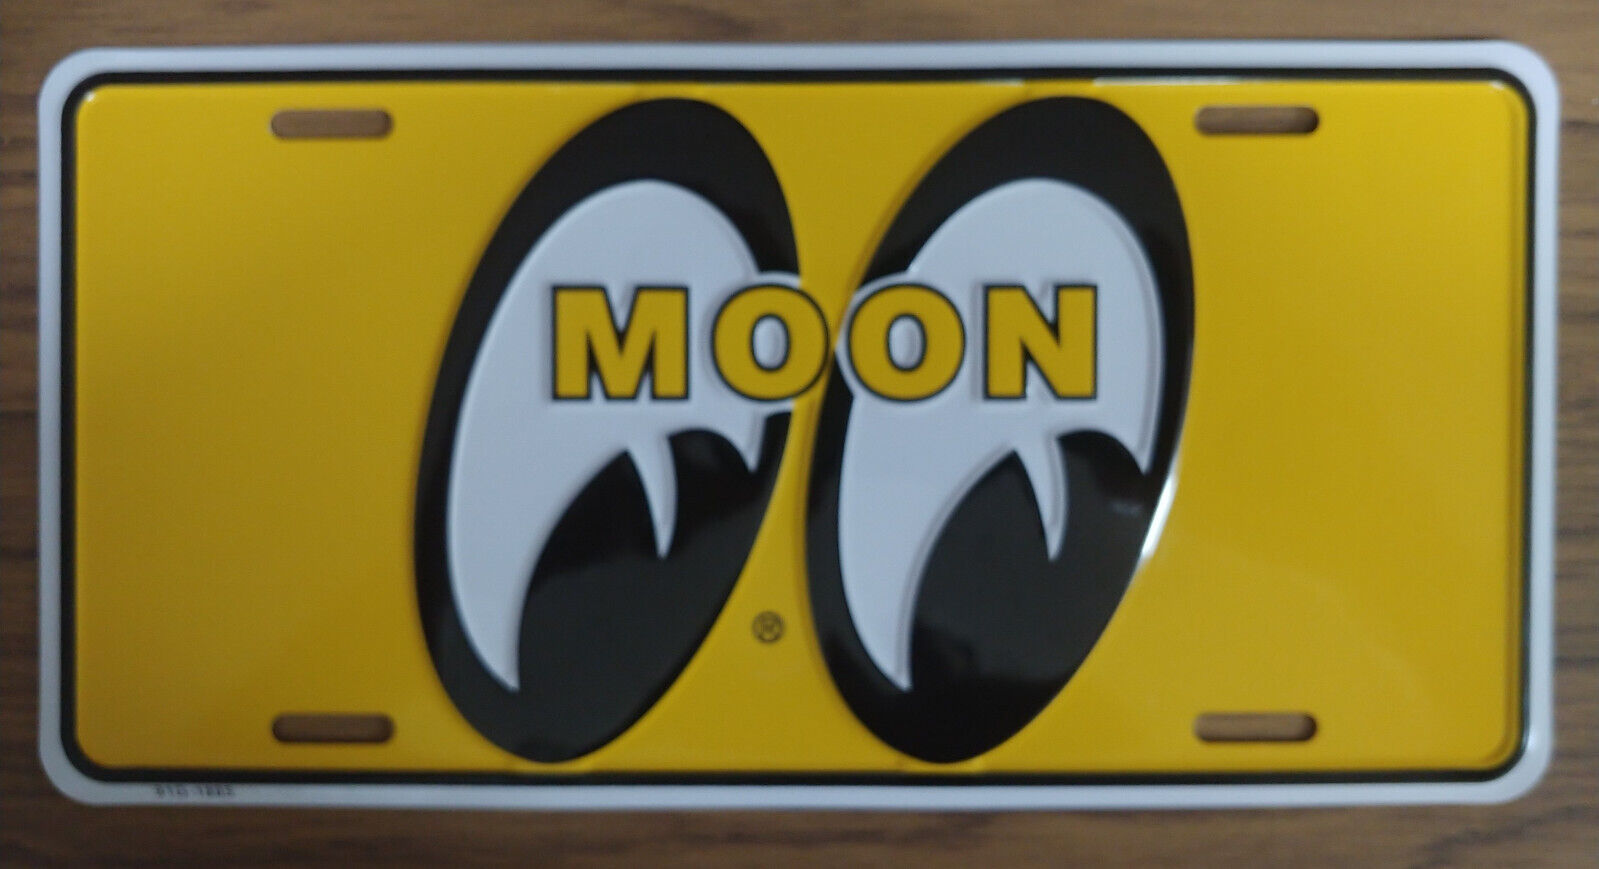 Vintage Mooneyes License Plate Embossed Metal Aluminum New Old Stock MOON